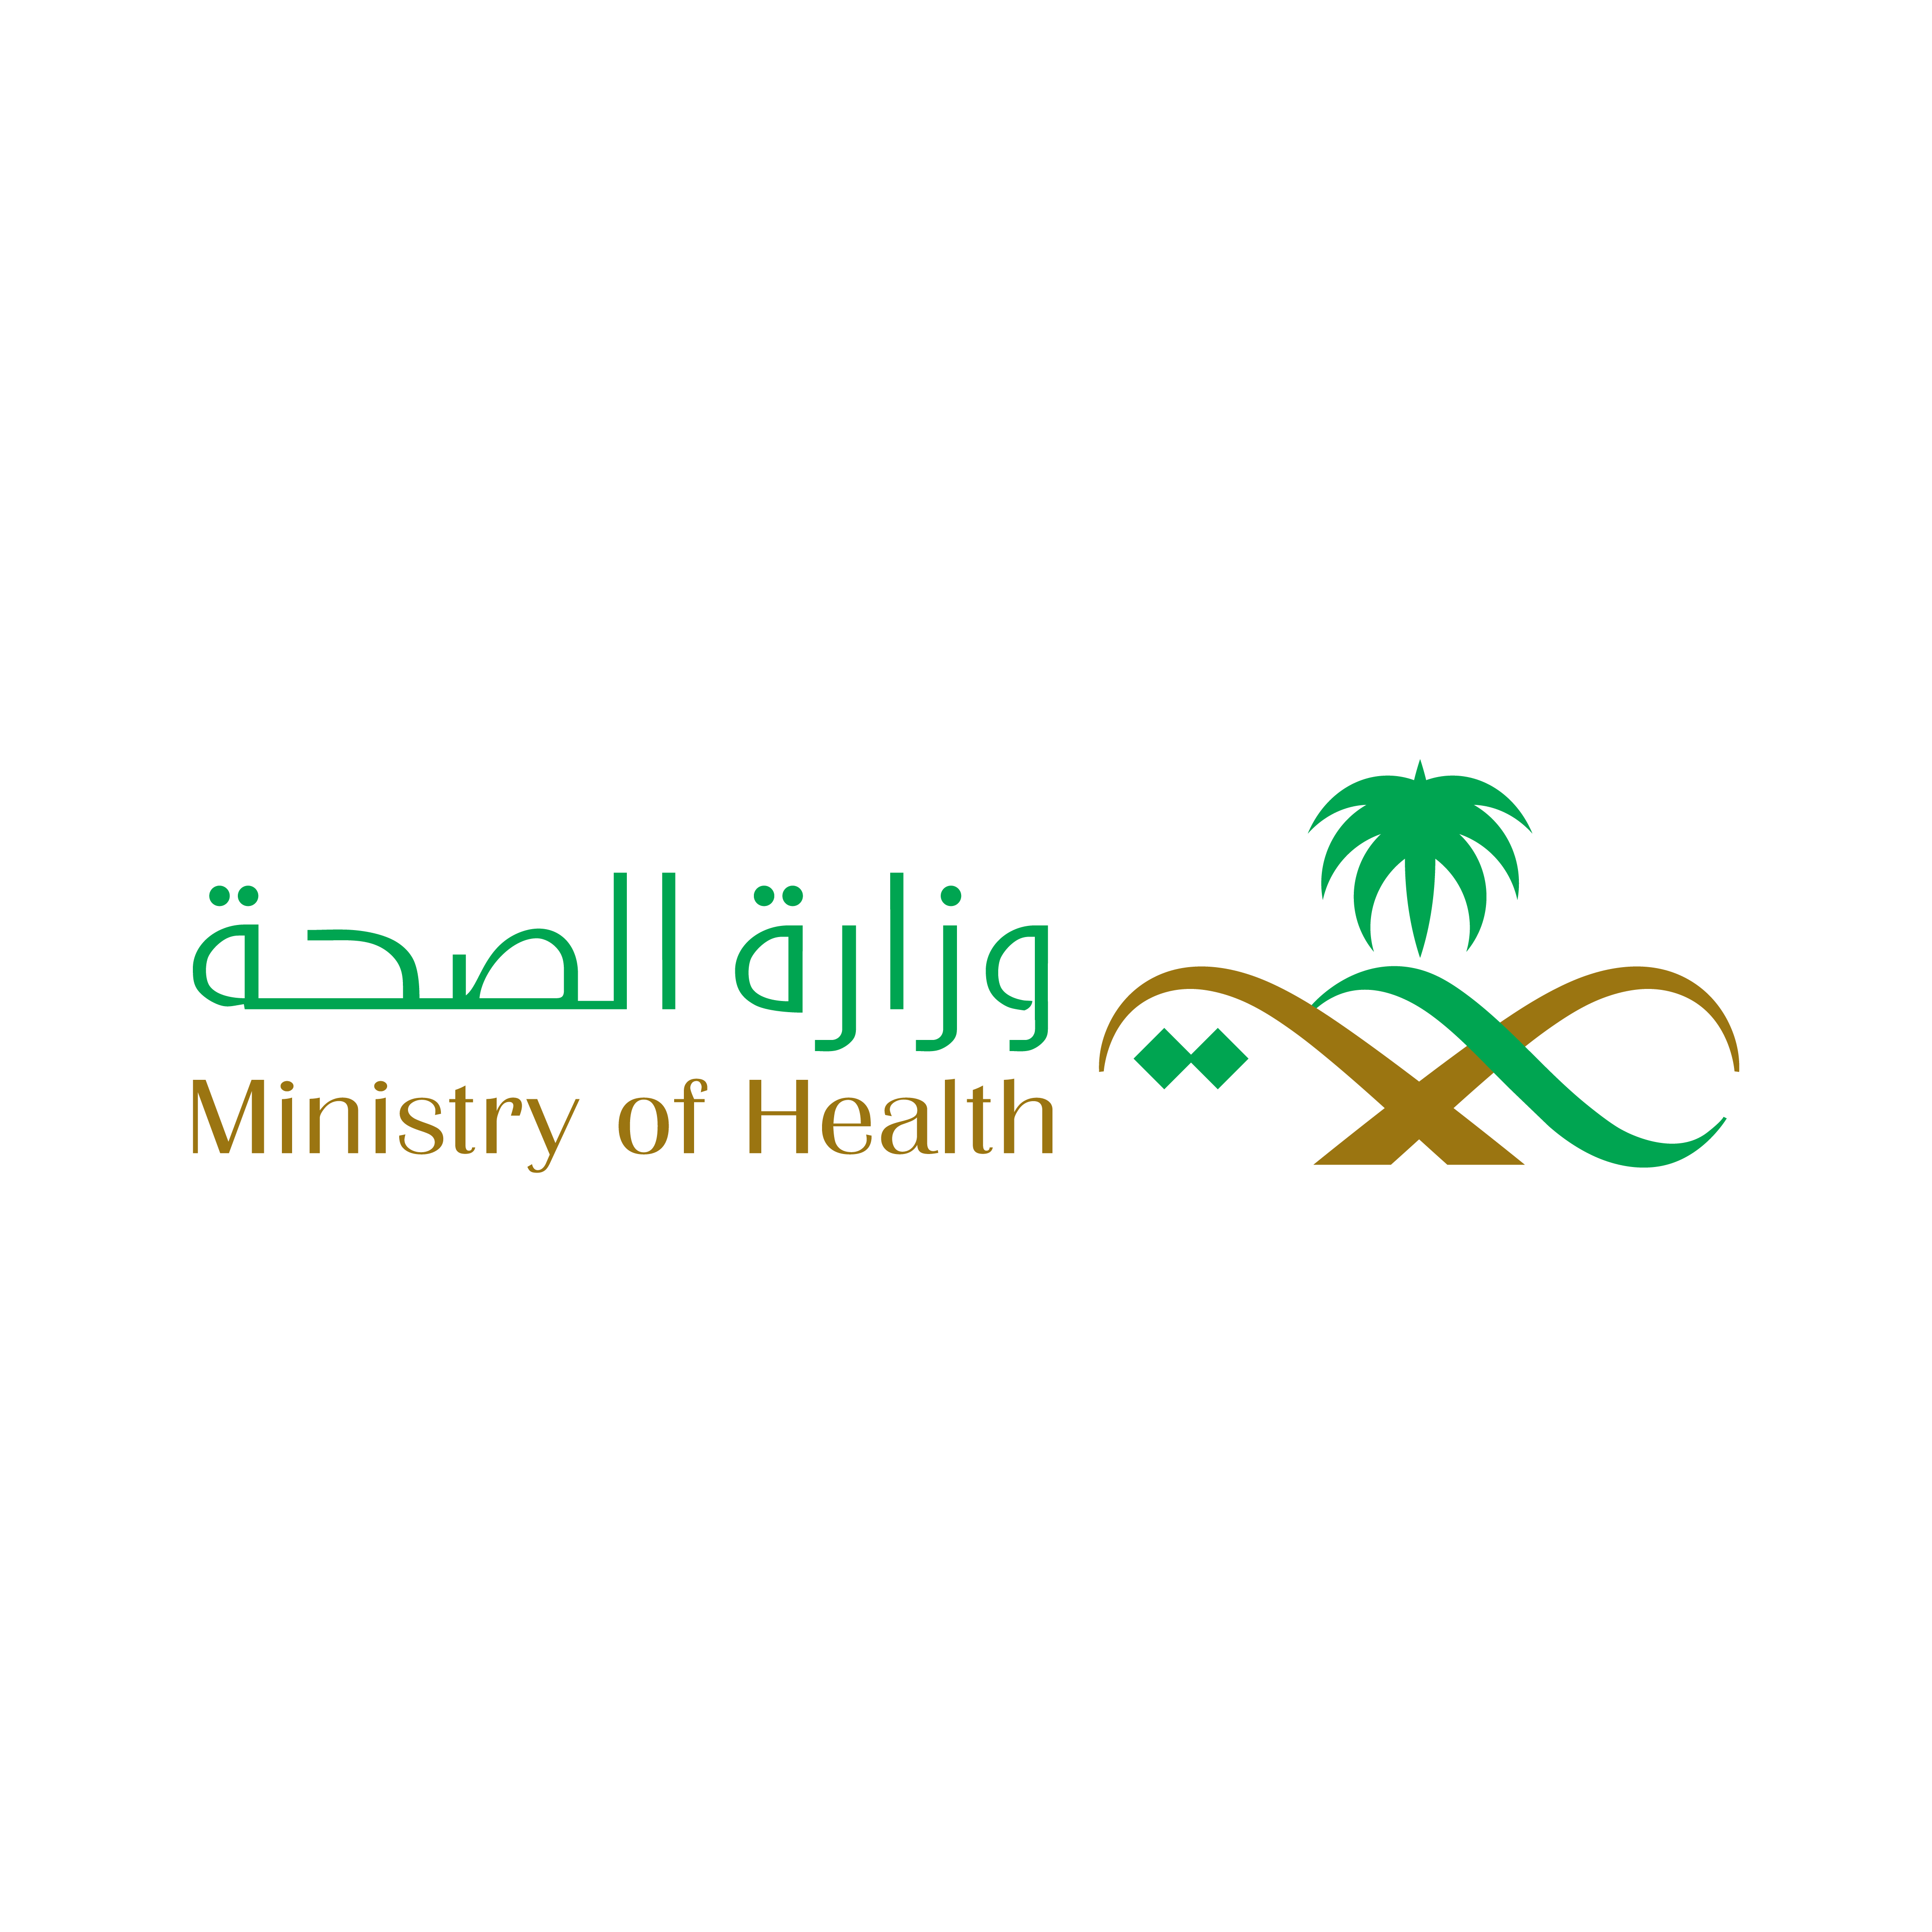 Saudi Ministry of Health logo 11 - شعار وزارة الصحة السعودية png مفرغ بدون خلفية شفاف للتصميم